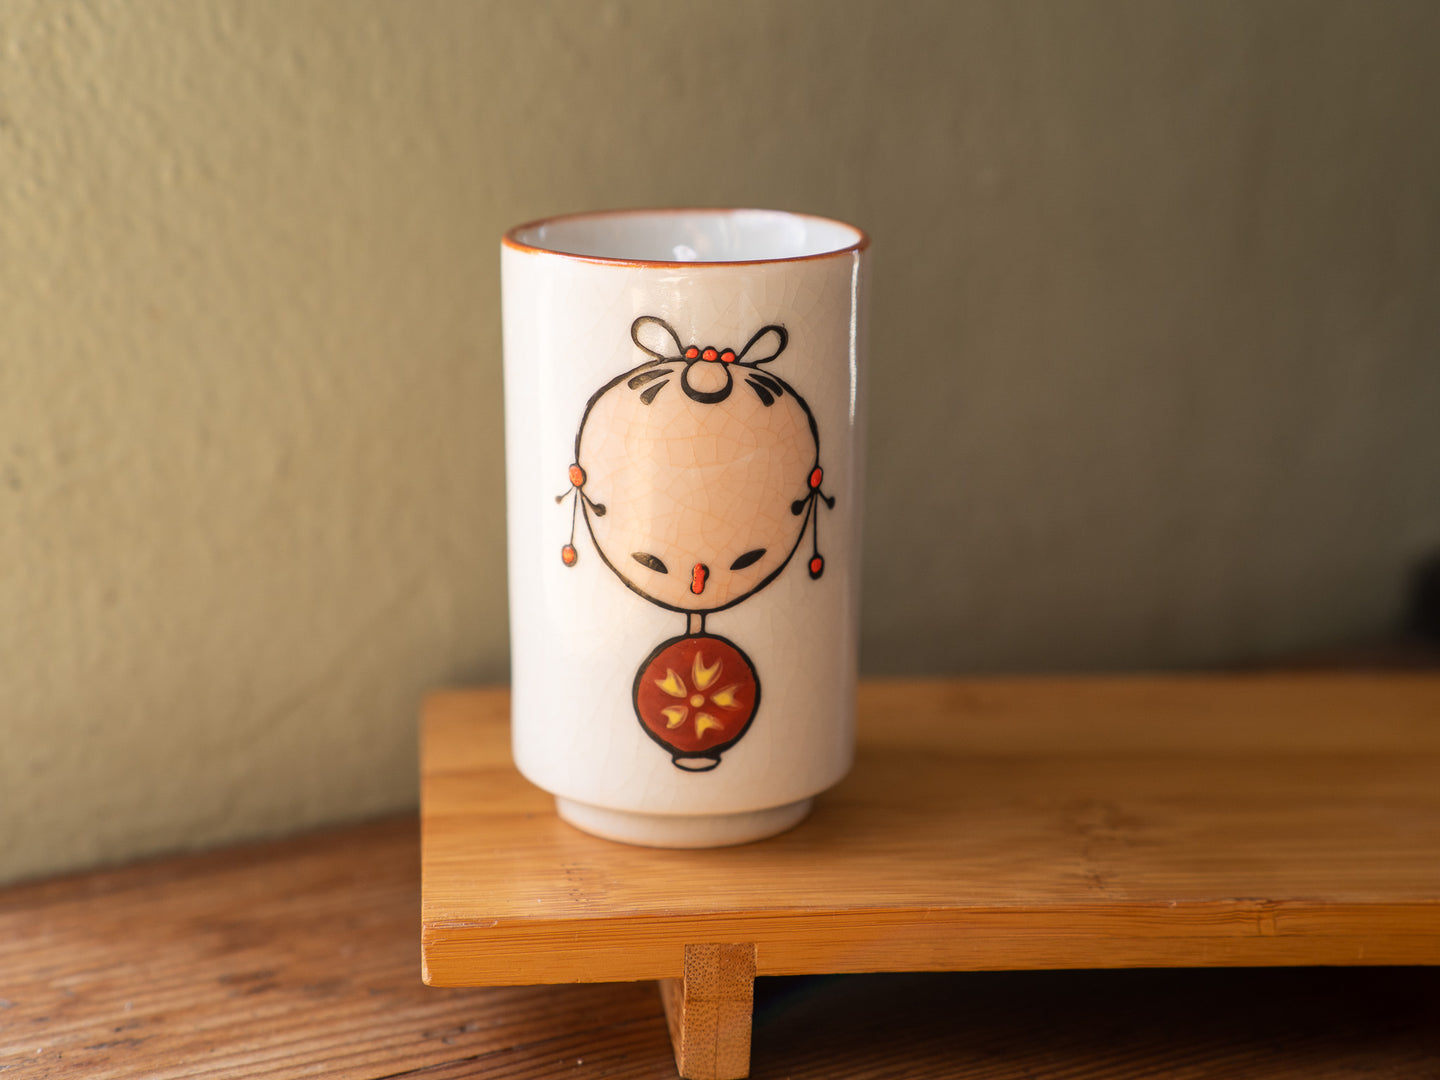 Sairen x Lulumiere Teacup Candle, Yuzu No.4